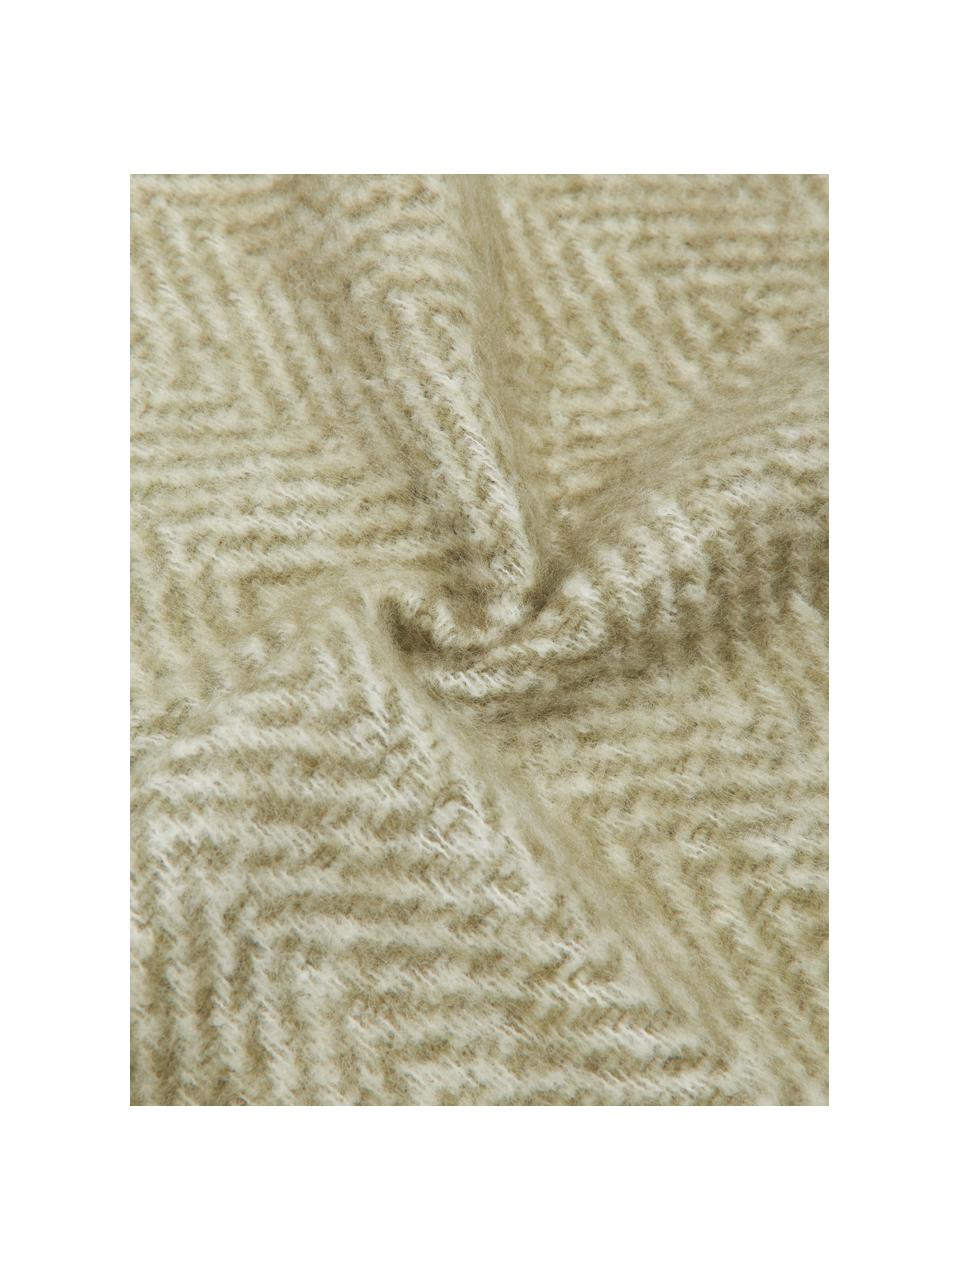 Plaid en laine vert avec franges Mathea, 60 % laine, 25 % acrylique, 15 % nylon, Brun, couleur crème, long. 170 x larg. 130 cm